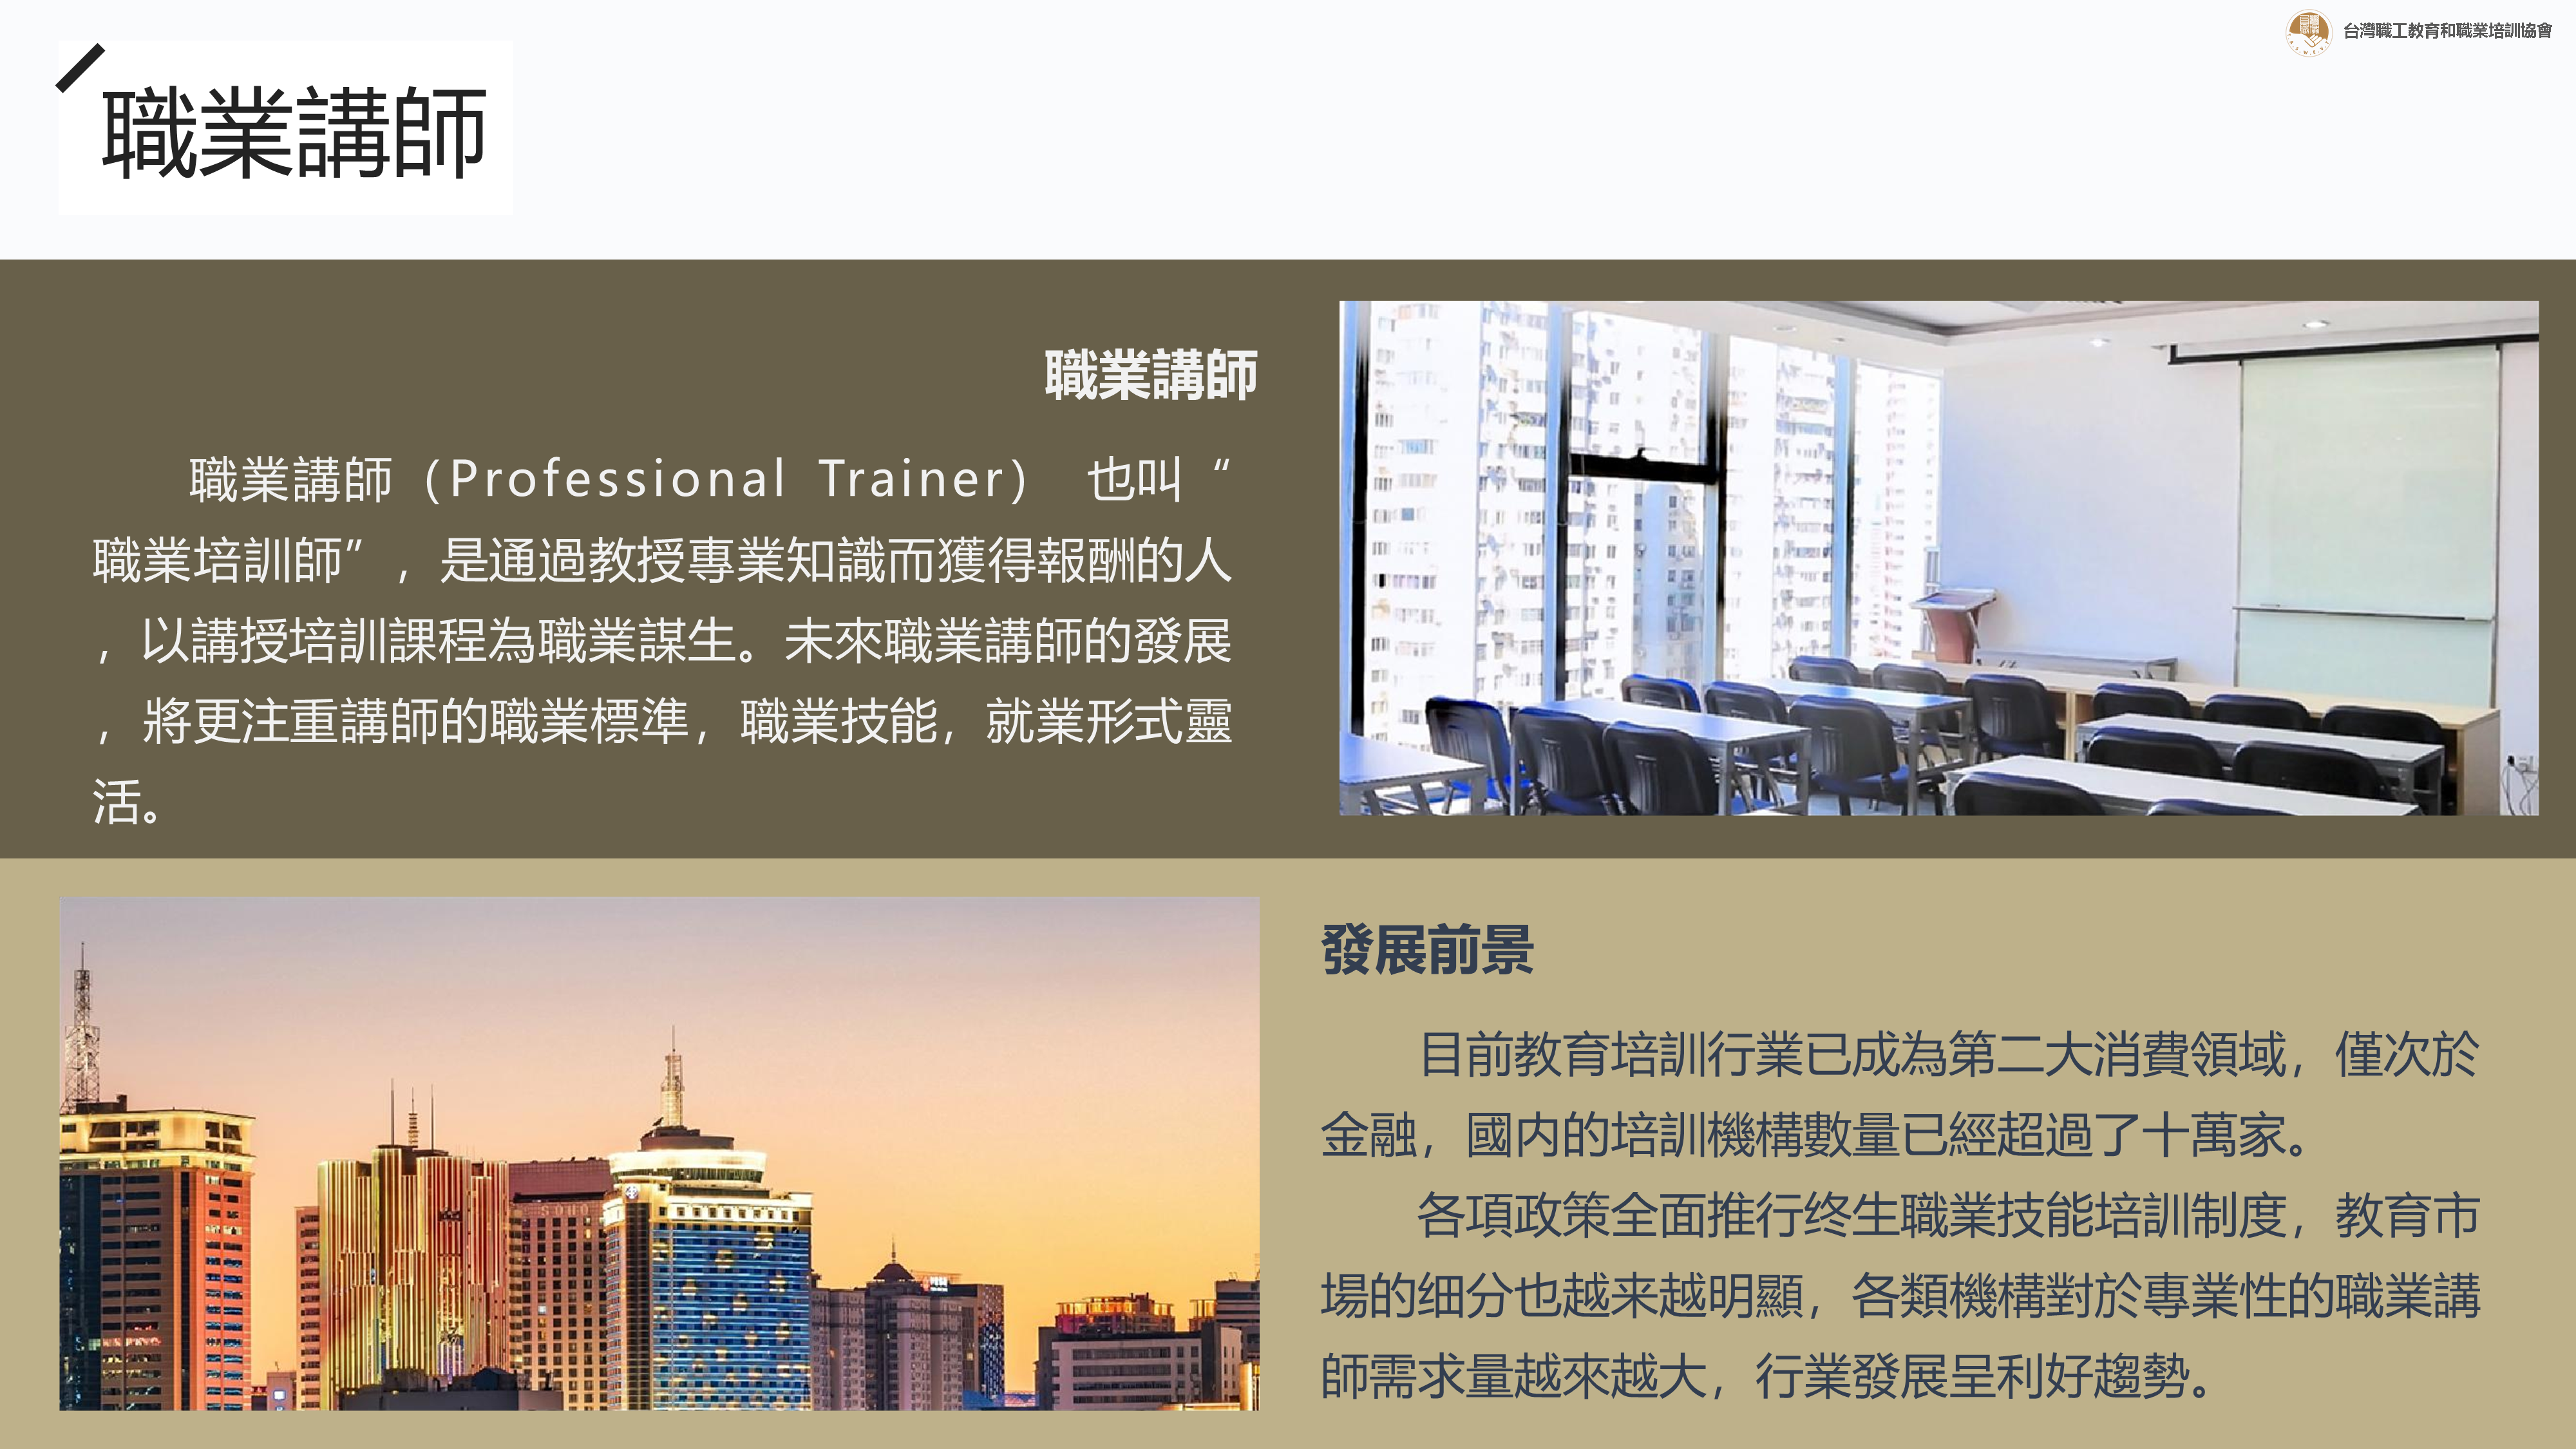 台灣職協Taswt-職業講師、職業培訓師